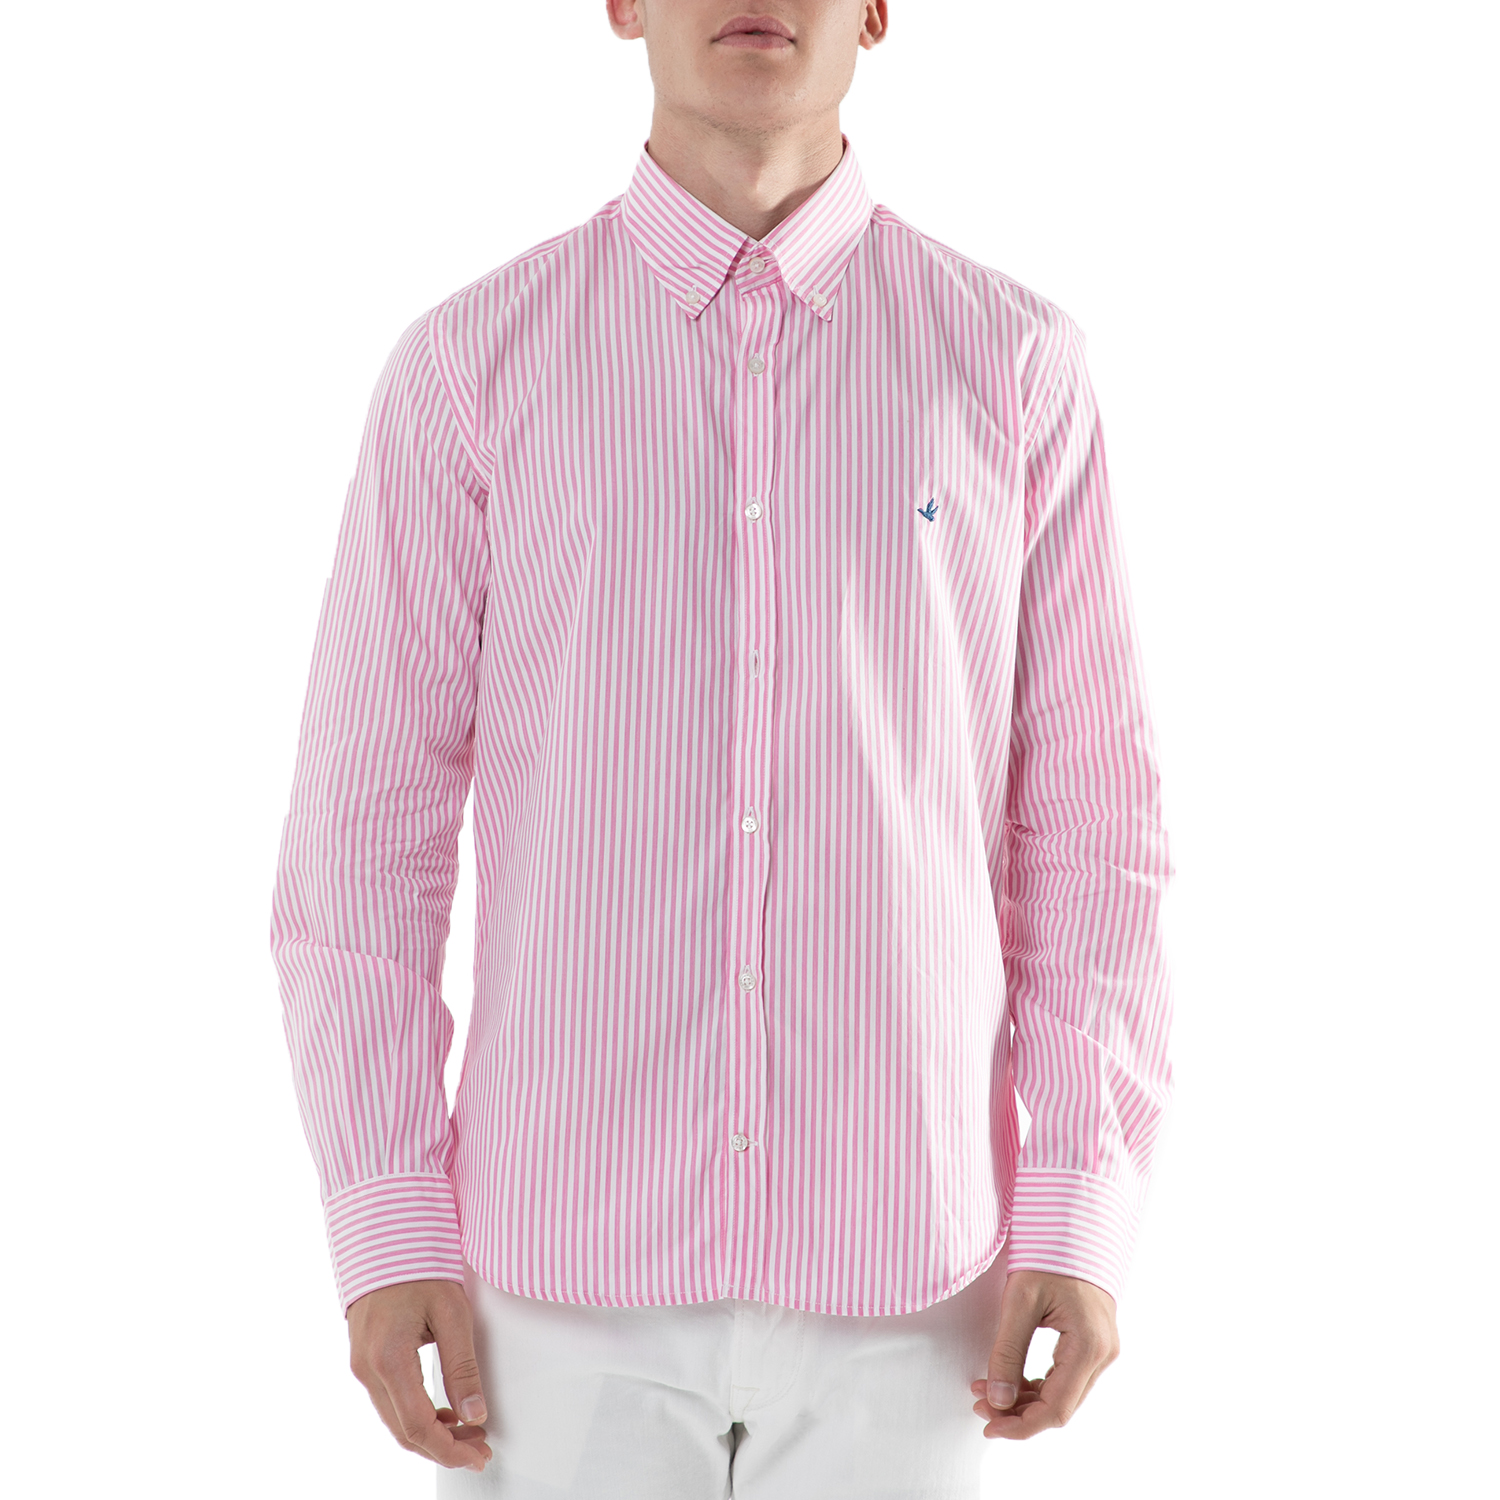 Ανδρικά/Ρούχα/Πουκάμισα/Μακρυμάνικα BROOKSFIELD - Ανδρικό μακρυμάνικο πουκάμισο Brooksfield ριγέ